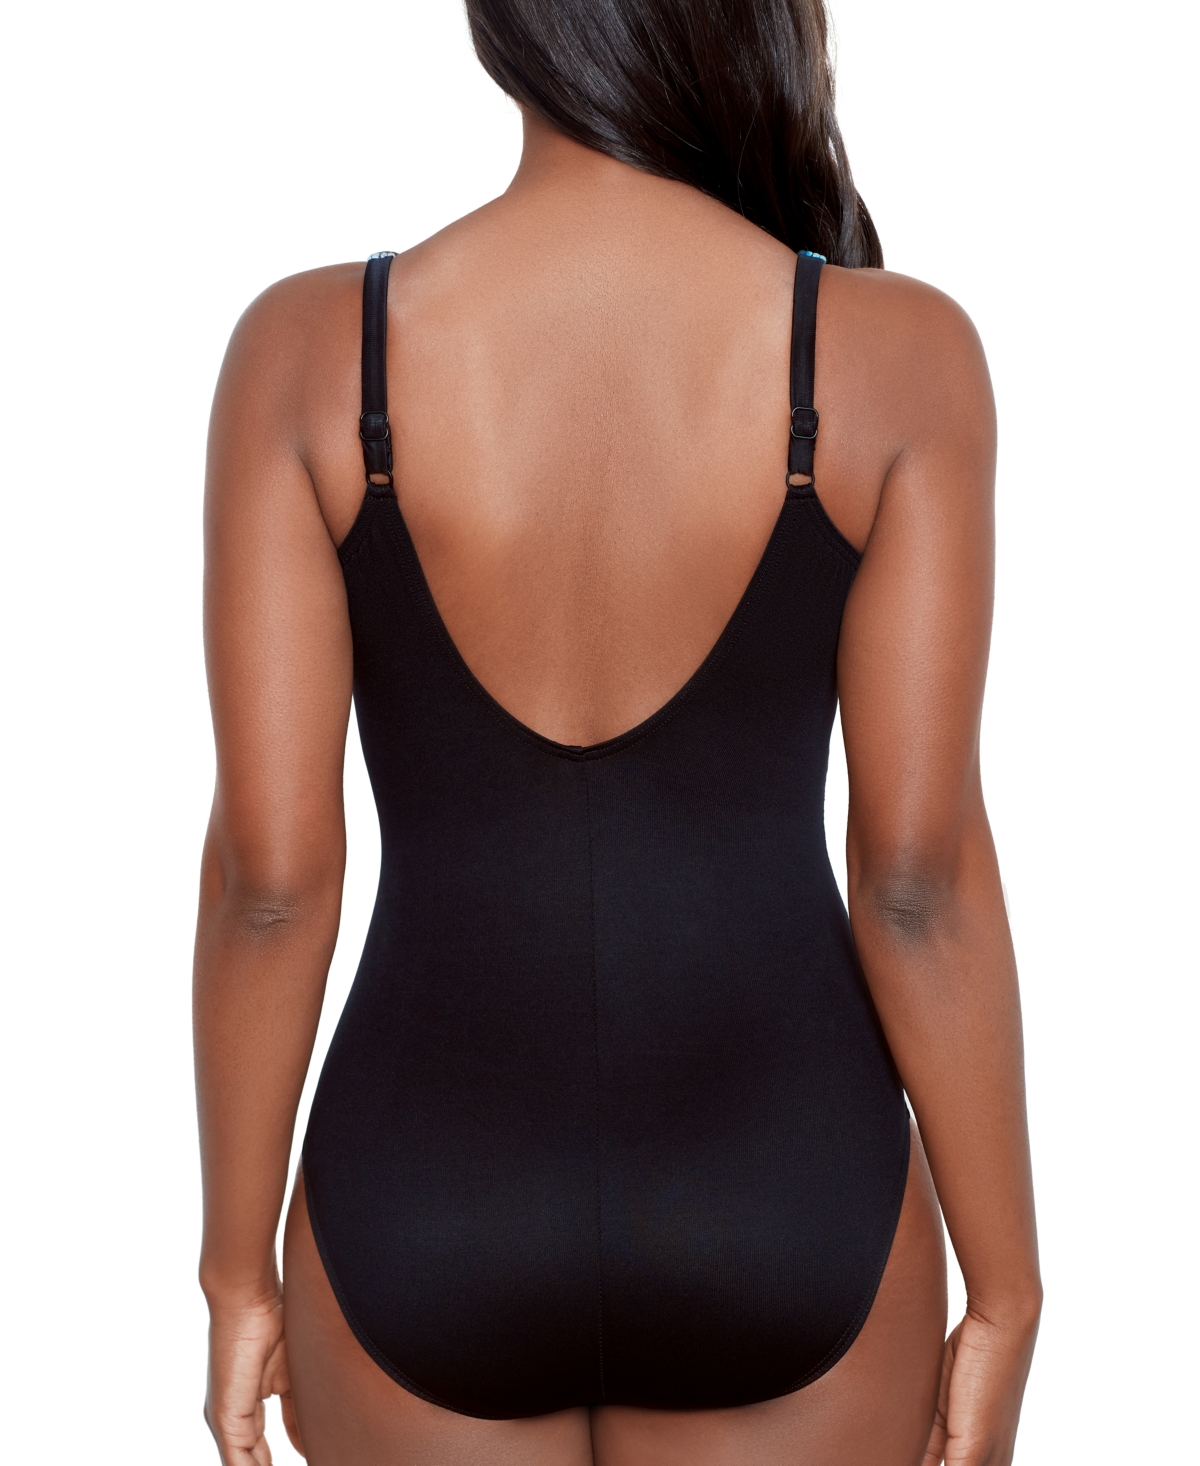 Shop Miraclesuit Women's Sophisticat Oceanus Tummy Control One-piece Swimsuit